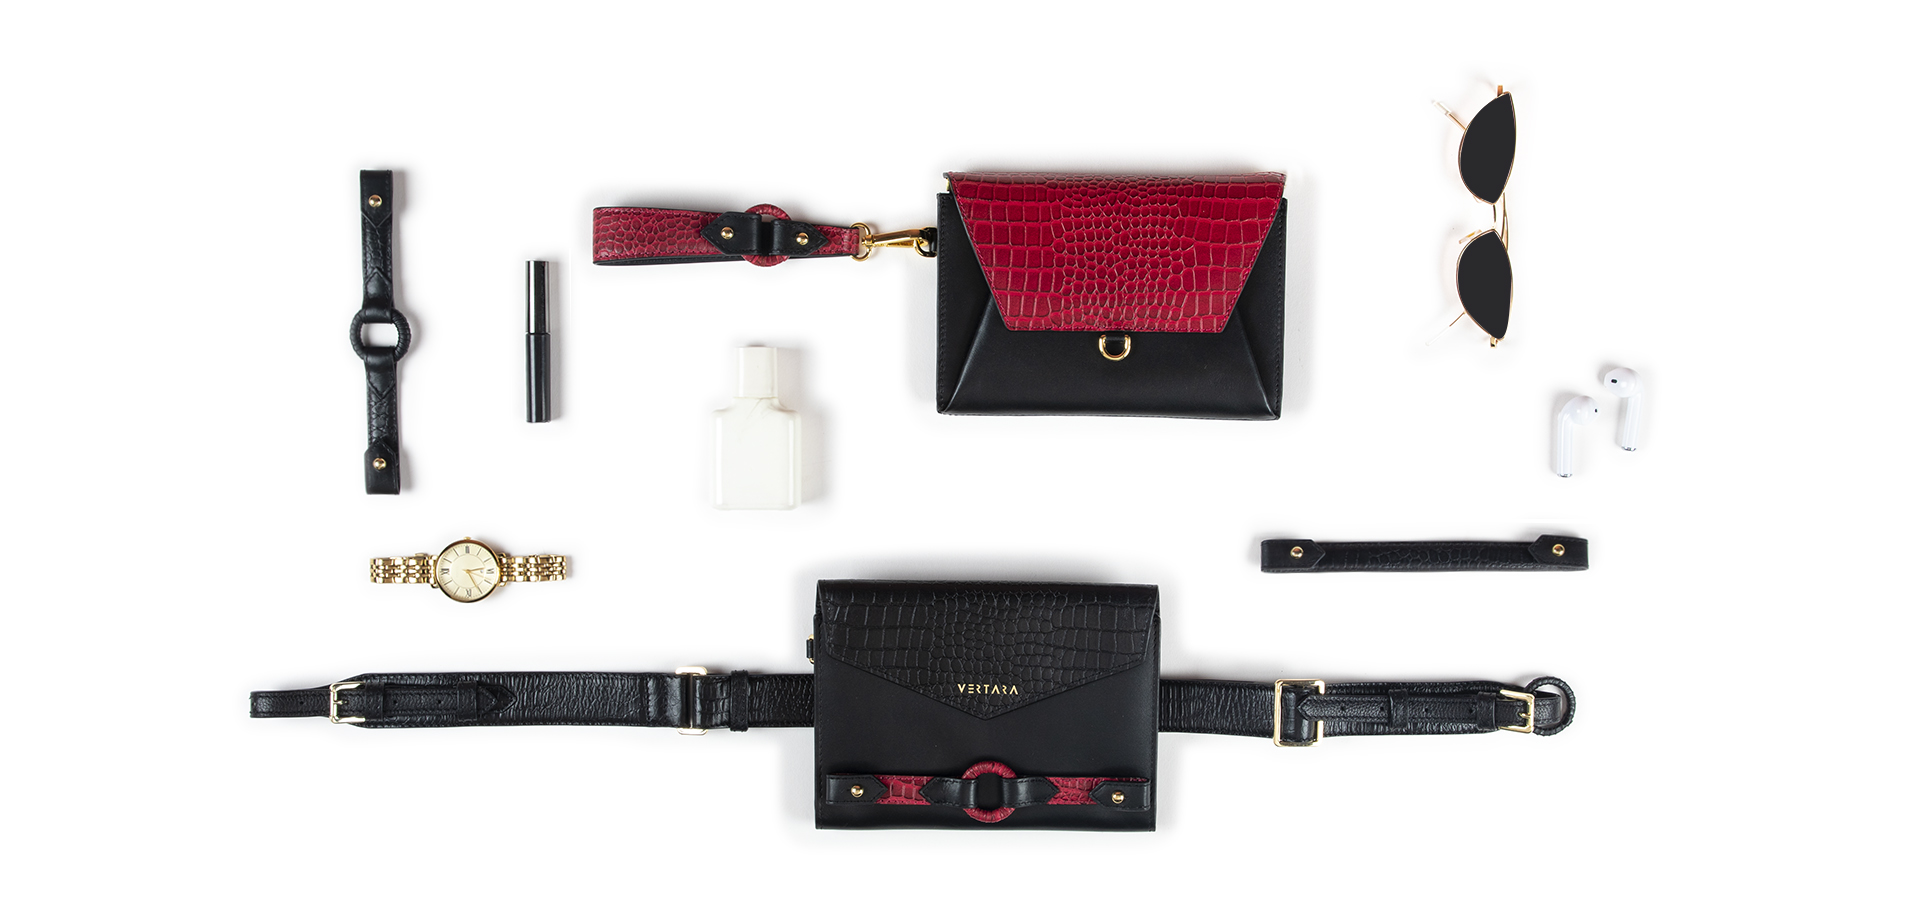 Ember Belt Bag-clutch-wallet-wristlet with Ember Bracelets in Black & Red Leather fits cards, cash & phone.